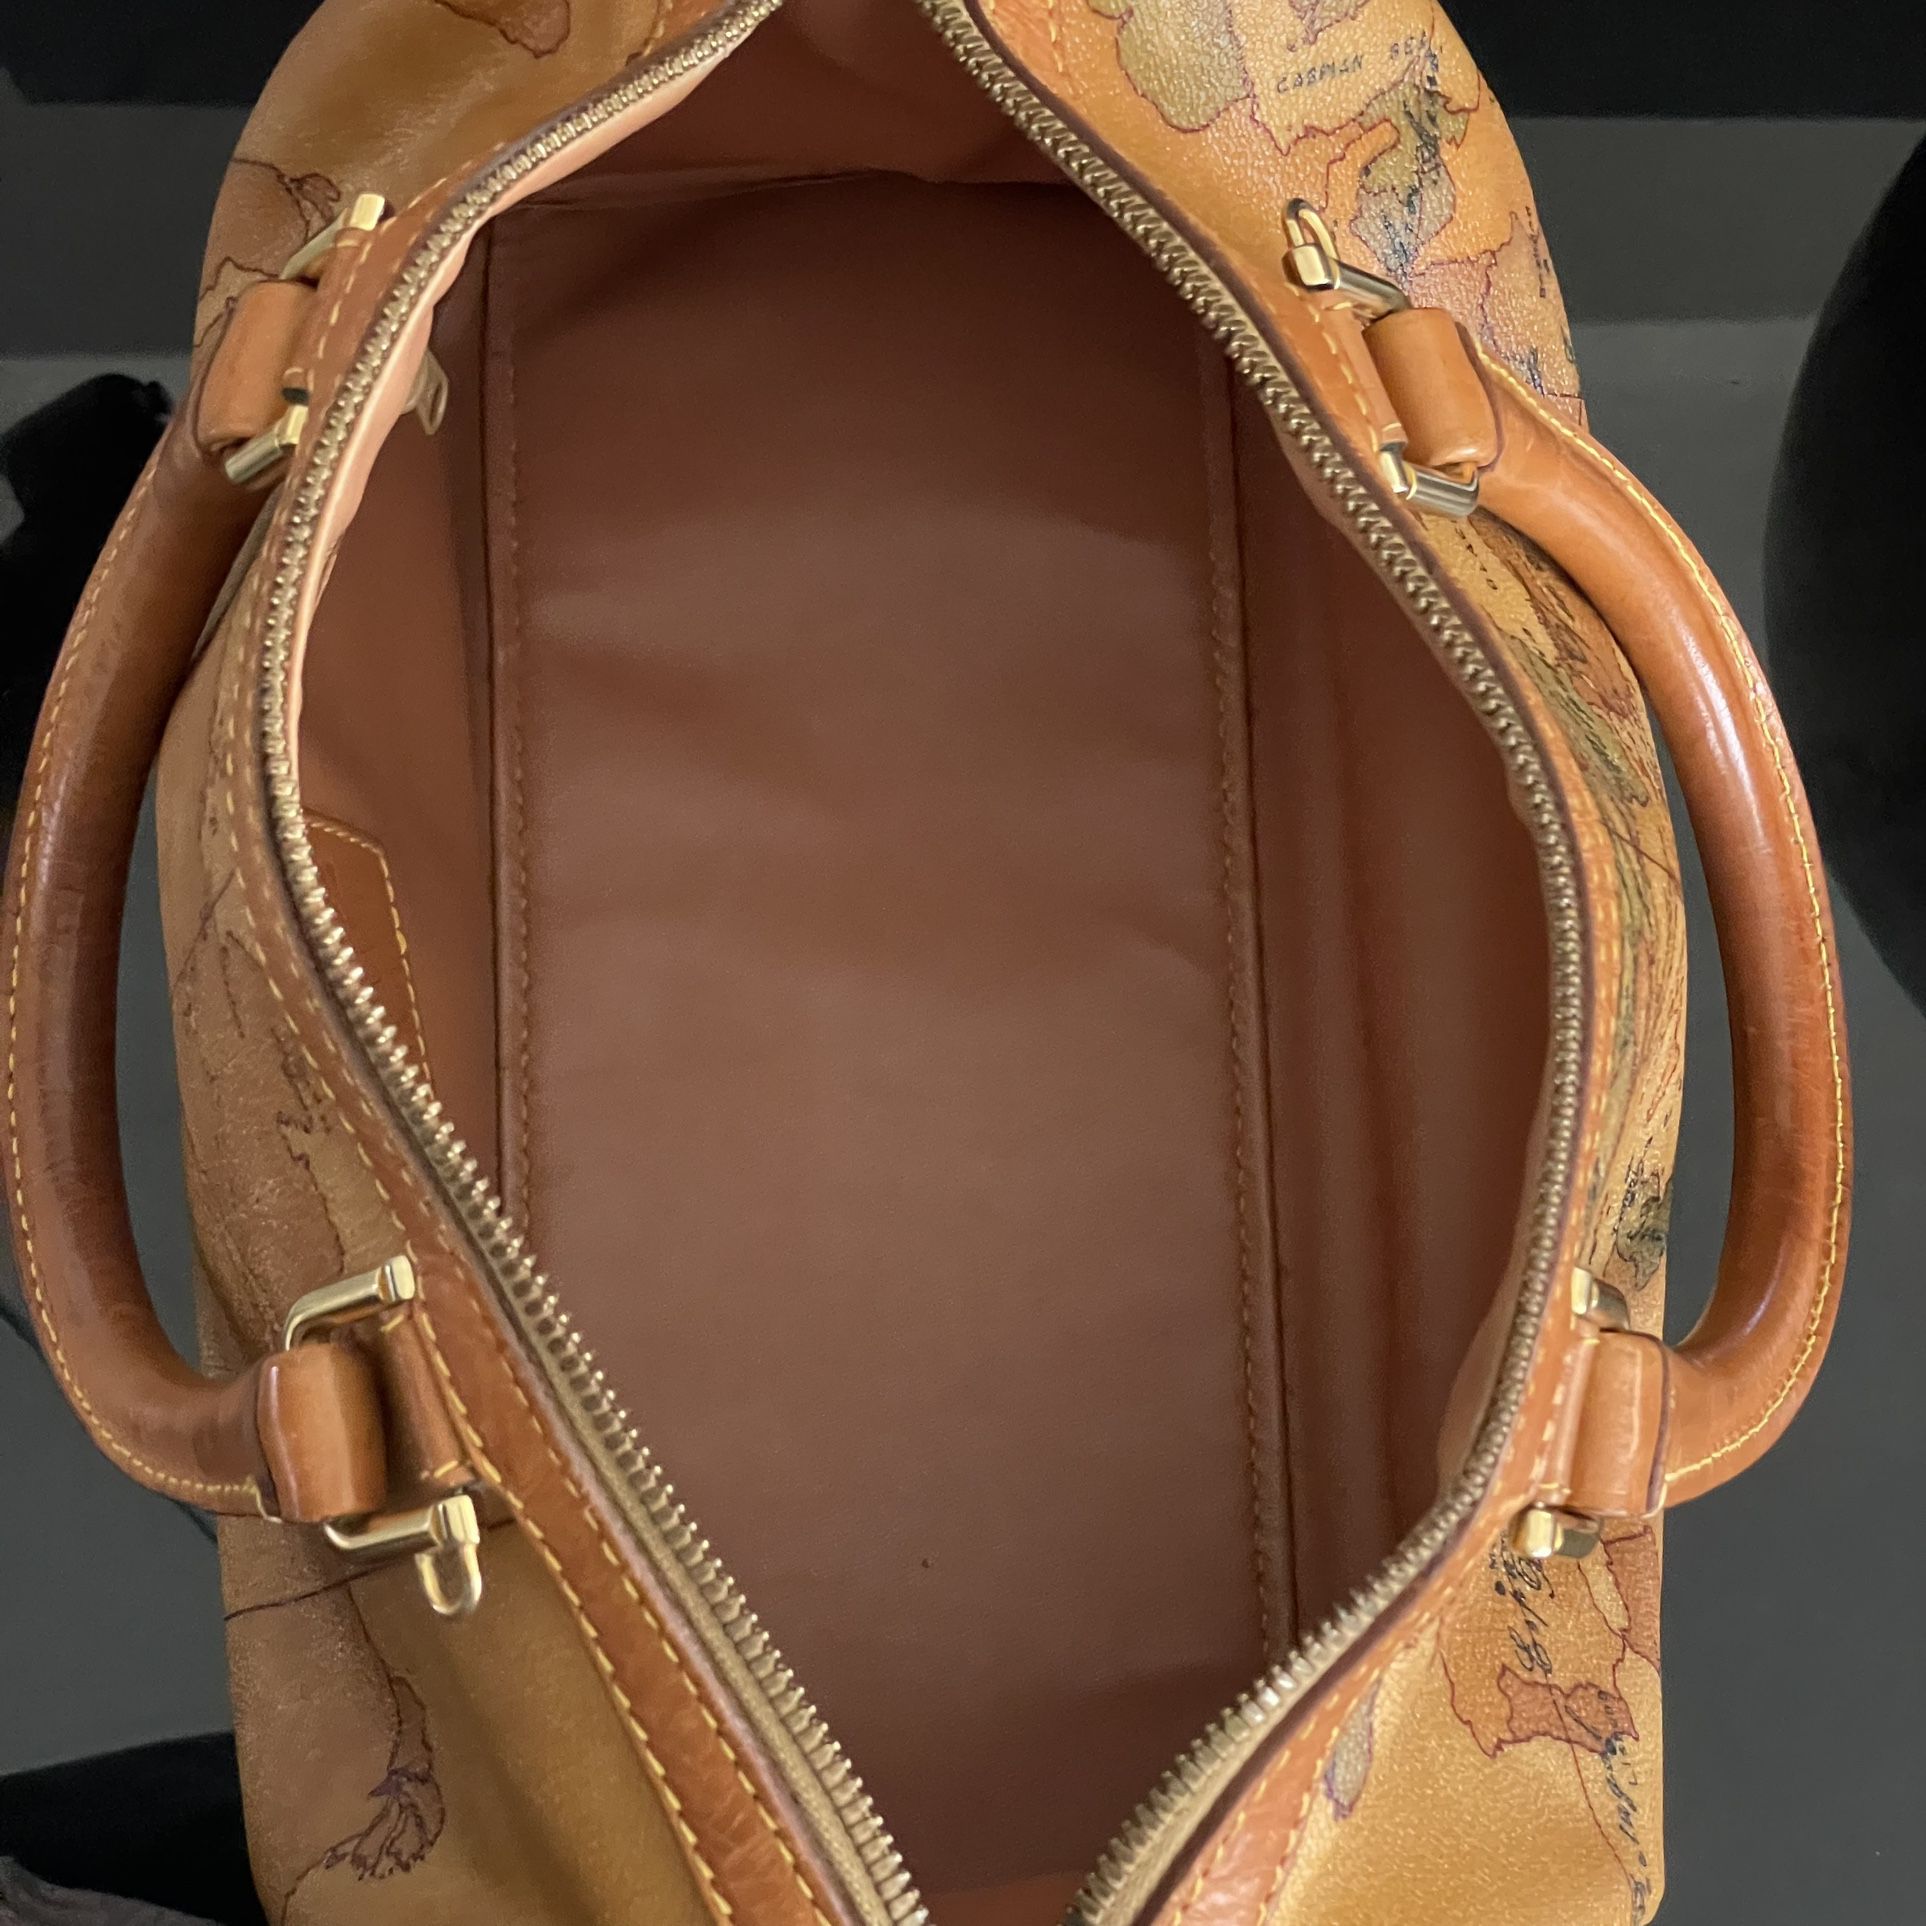 L'CLASSE Alvaro Martini Speedy Bag for Sale in Dallas, TX - OfferUp